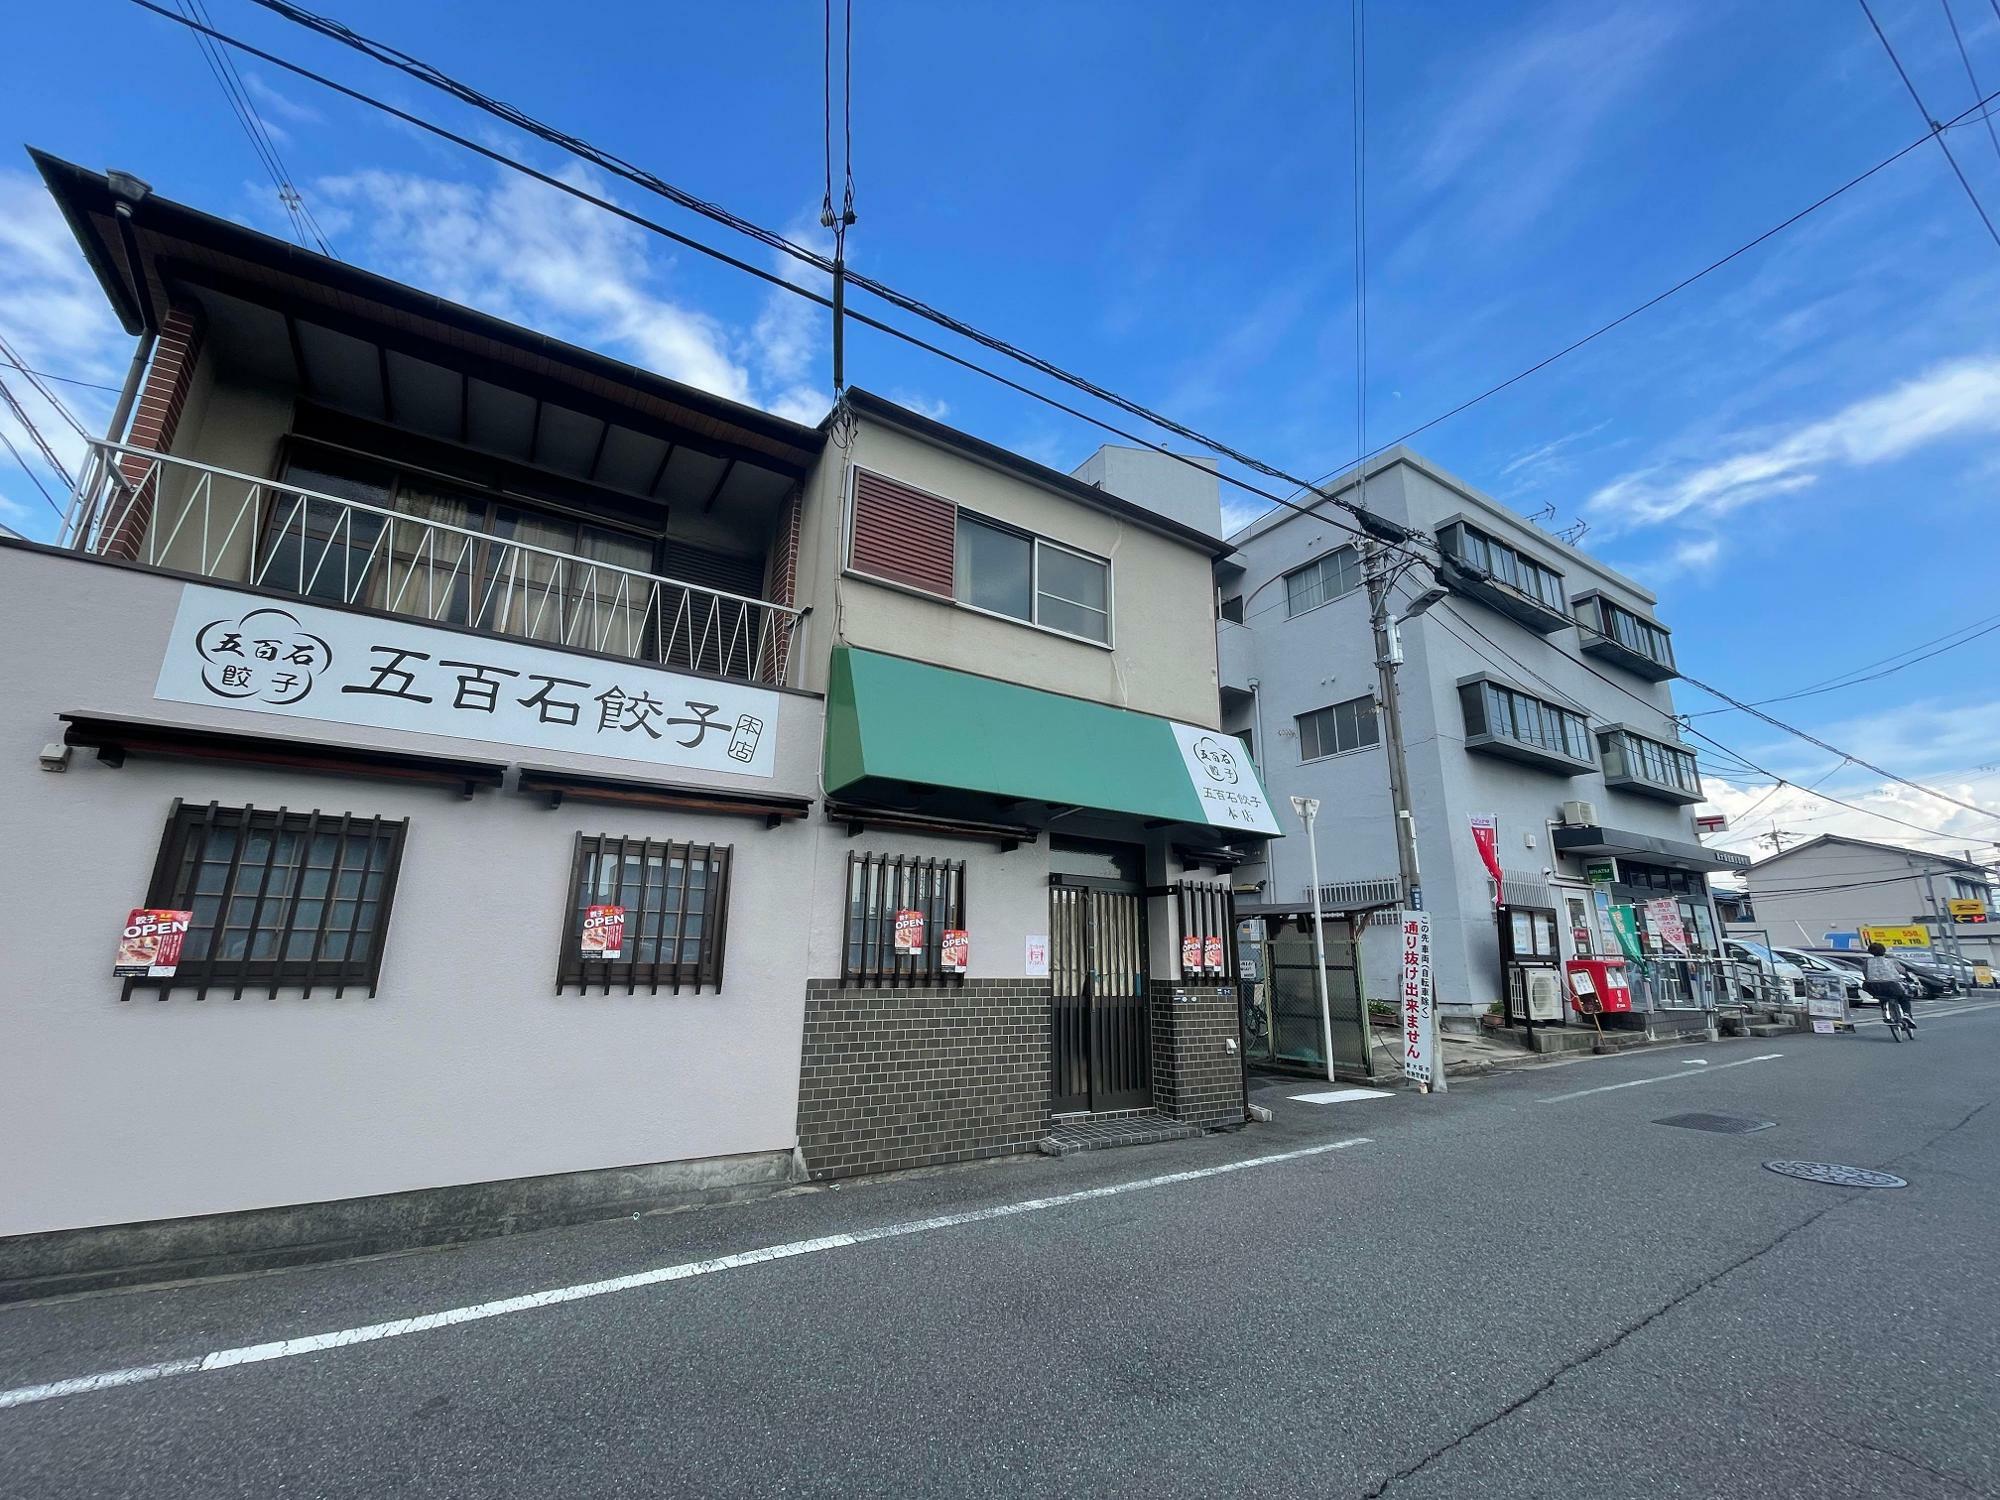 《右のグレーの建物が東大阪意岐部郵便局》